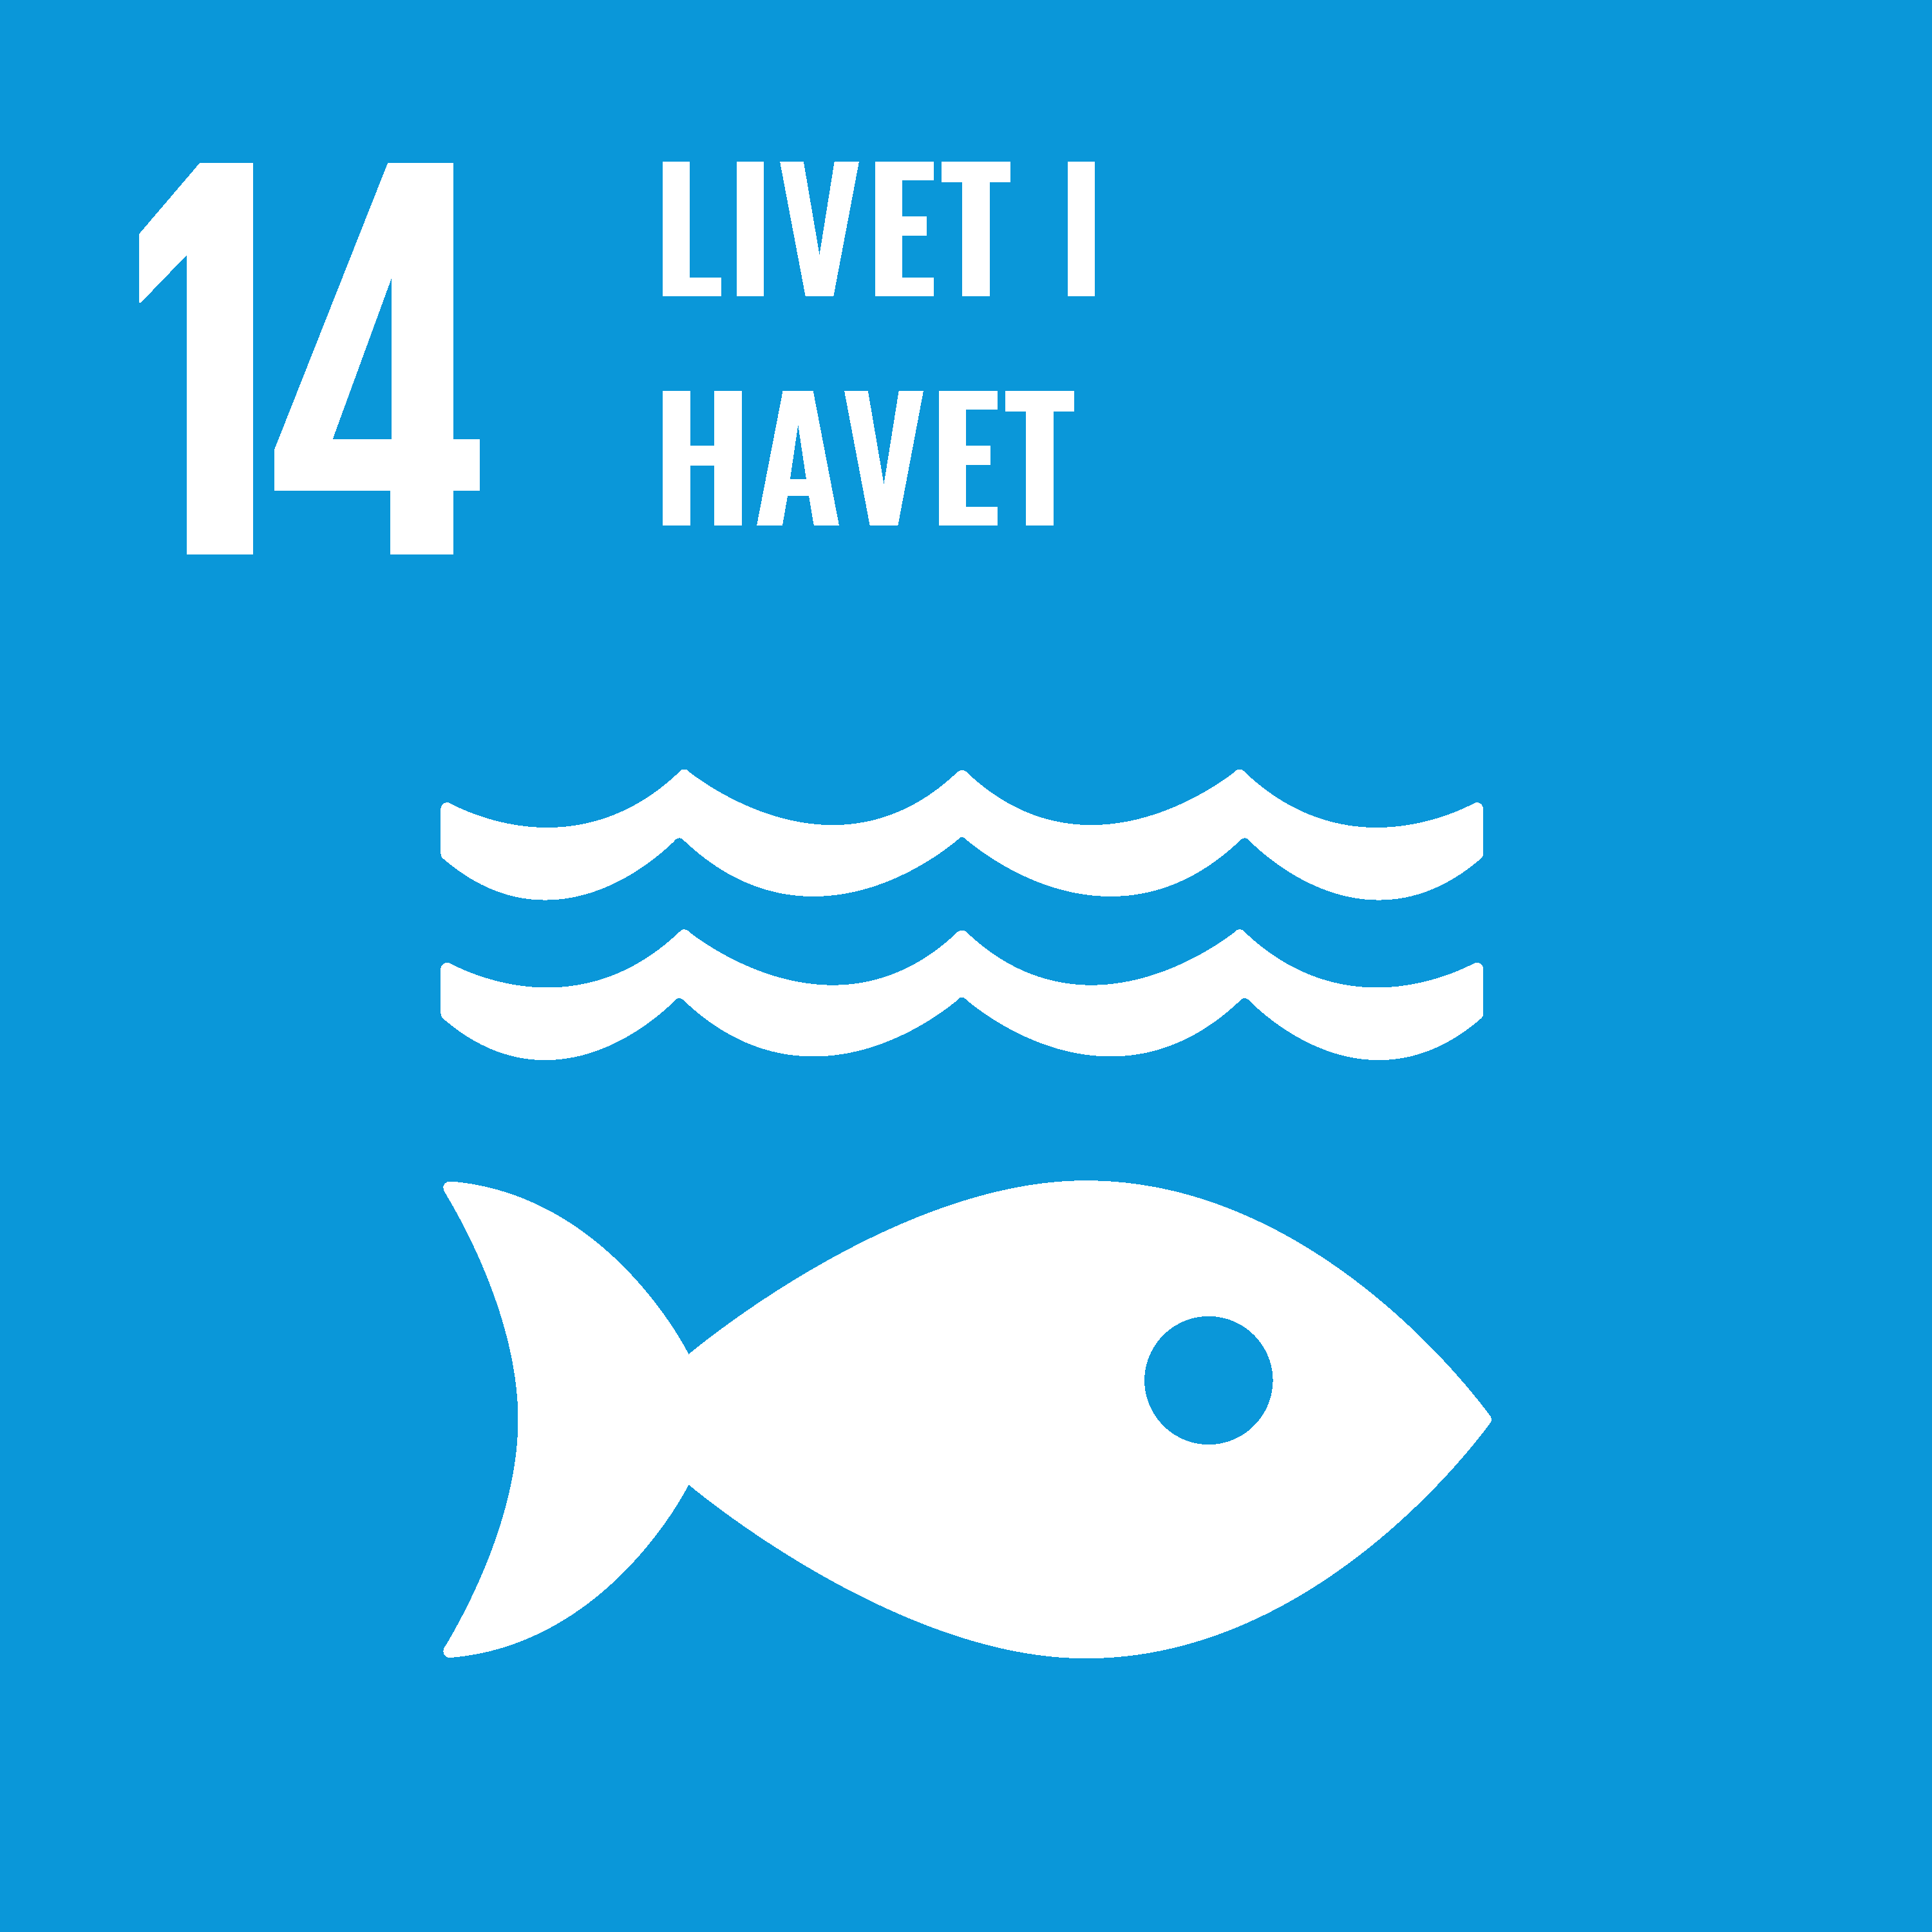 Livet i havet (SDG-14)